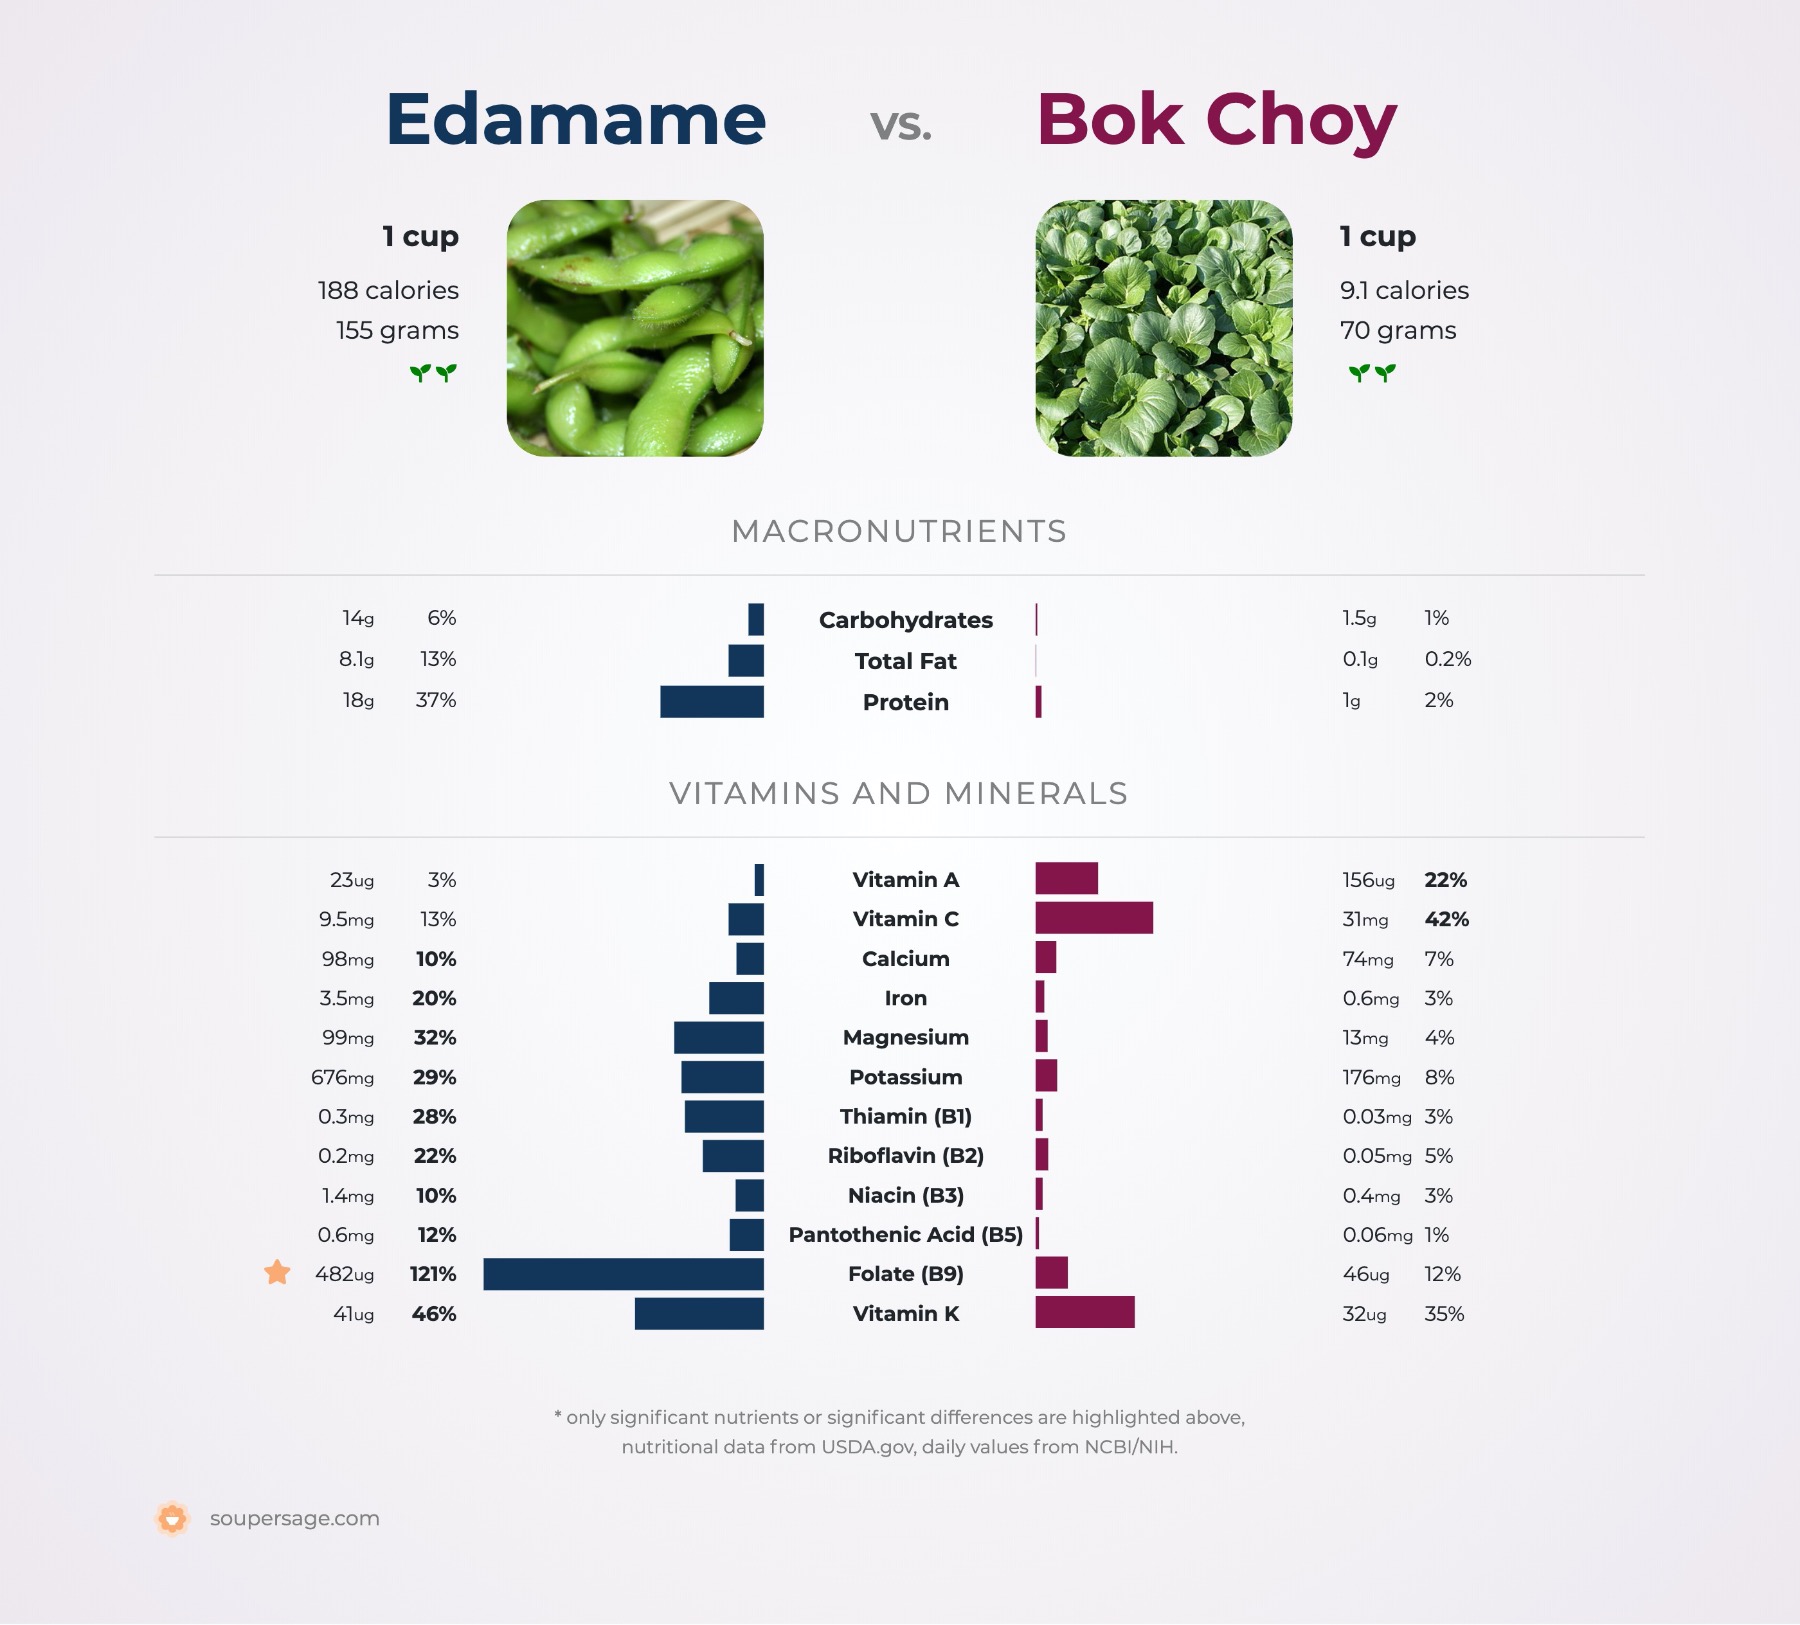 nutrition comparison of bok choy vs. edamame